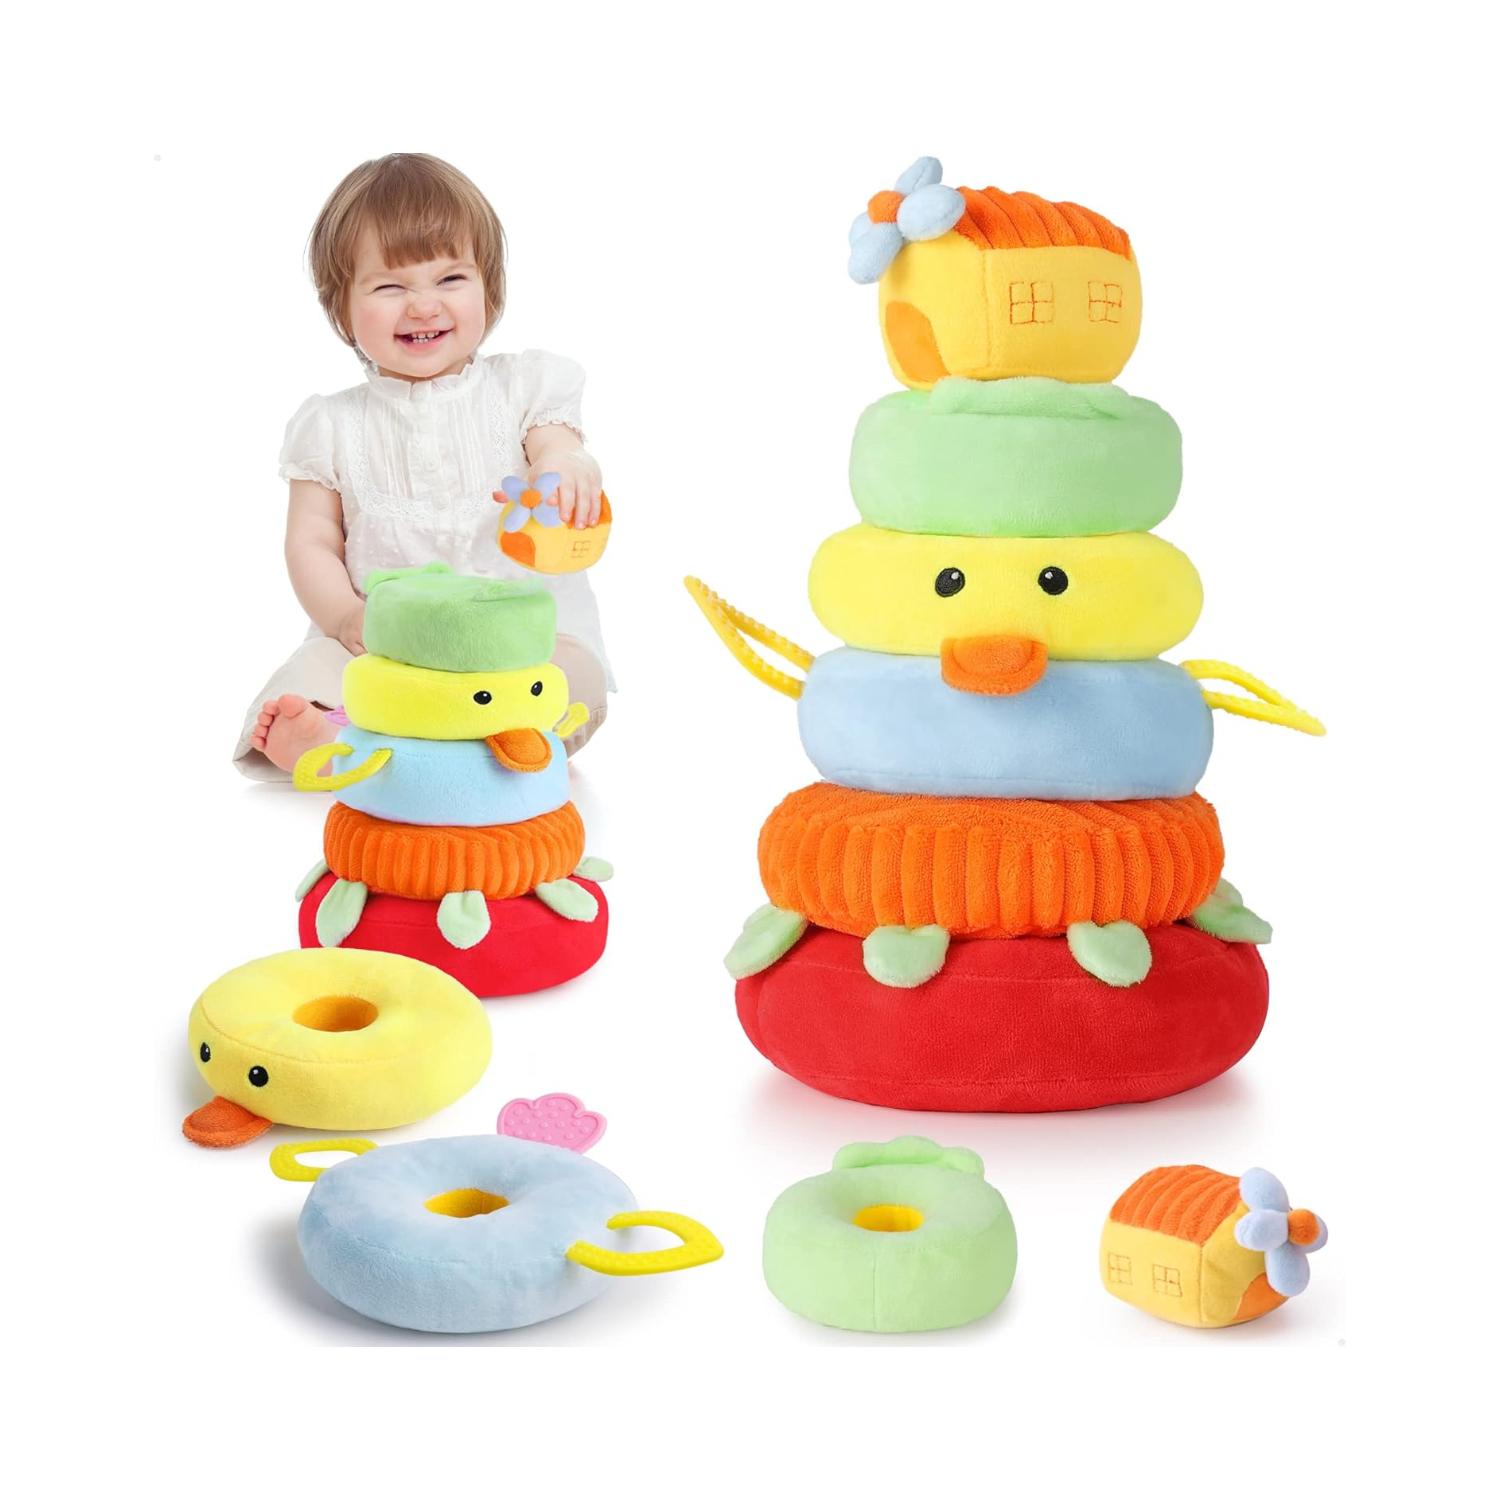 Montessori iPlay, iLearn Plush Stacker Duck